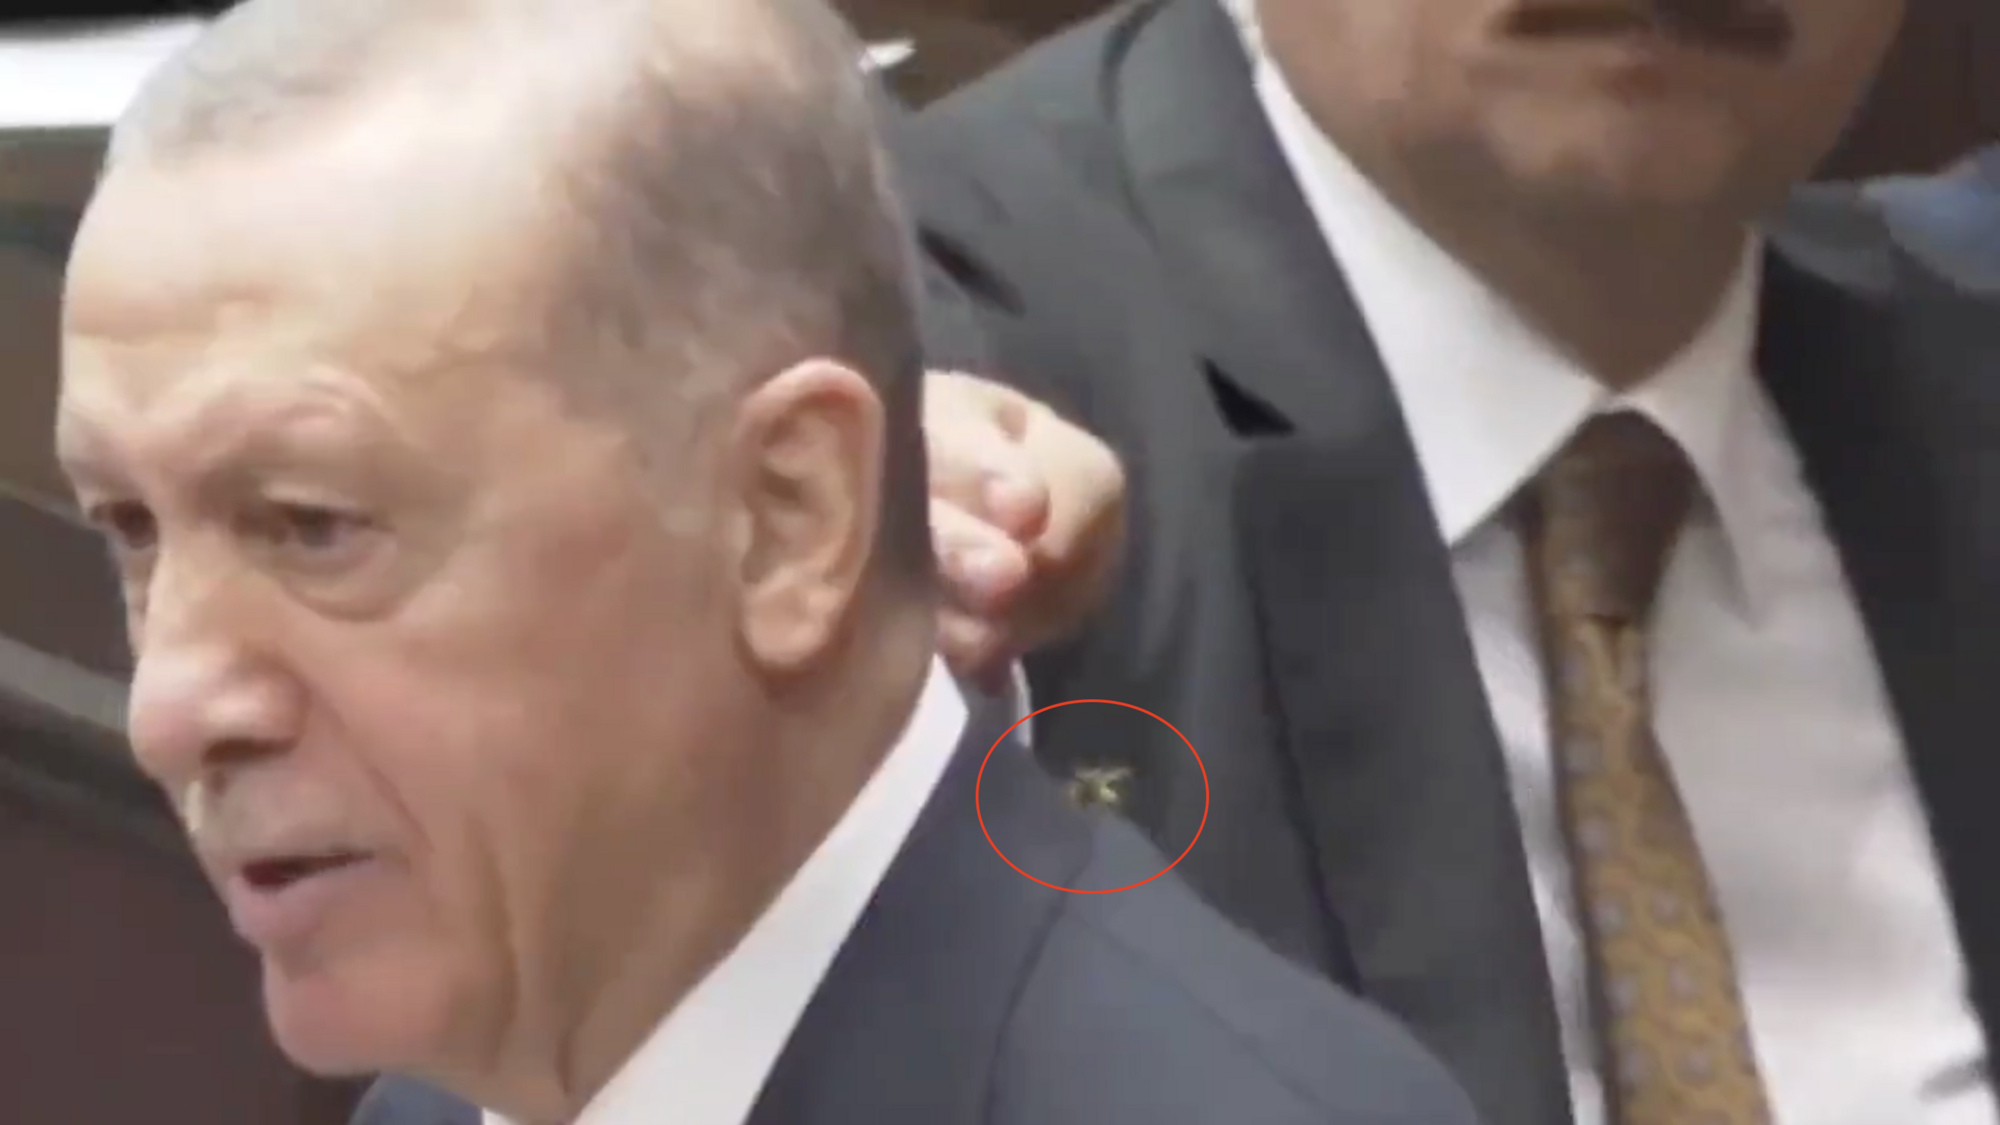 Ochroniarz Erdogana profesjonalnie wyeliminował osę, która wylądowała na ramieniu prezydenta. Wideo ciekawostka